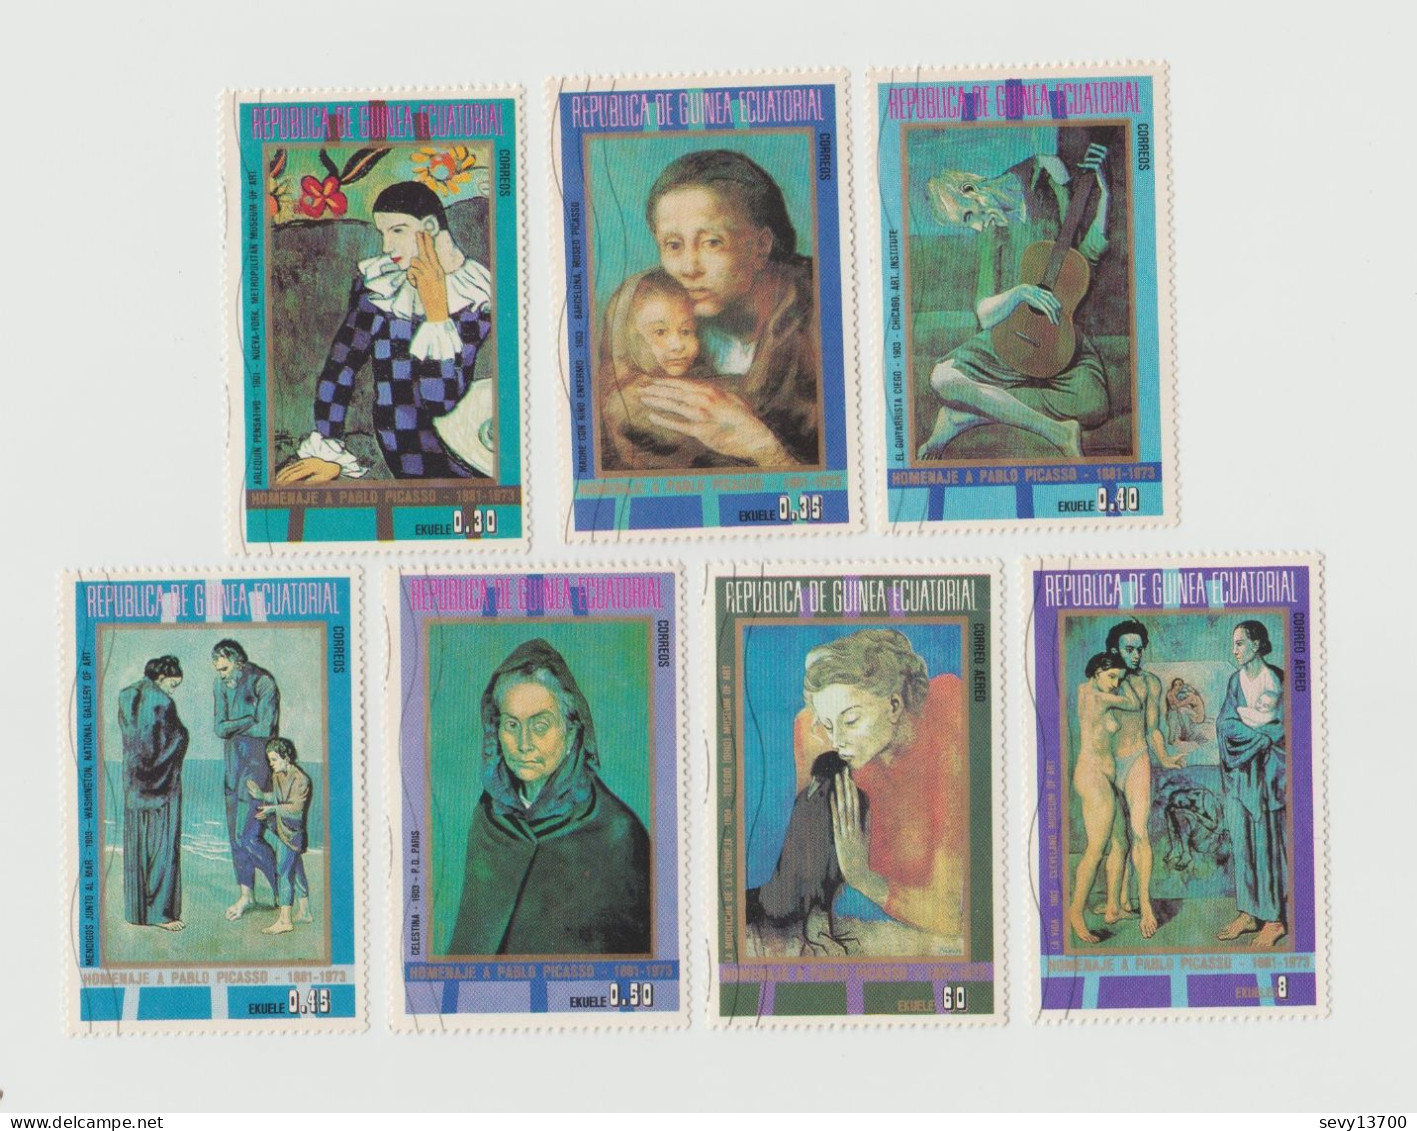 Guinée Equatoriale - Lot de 6 blocs et 21 timbres Hommage à Picasso